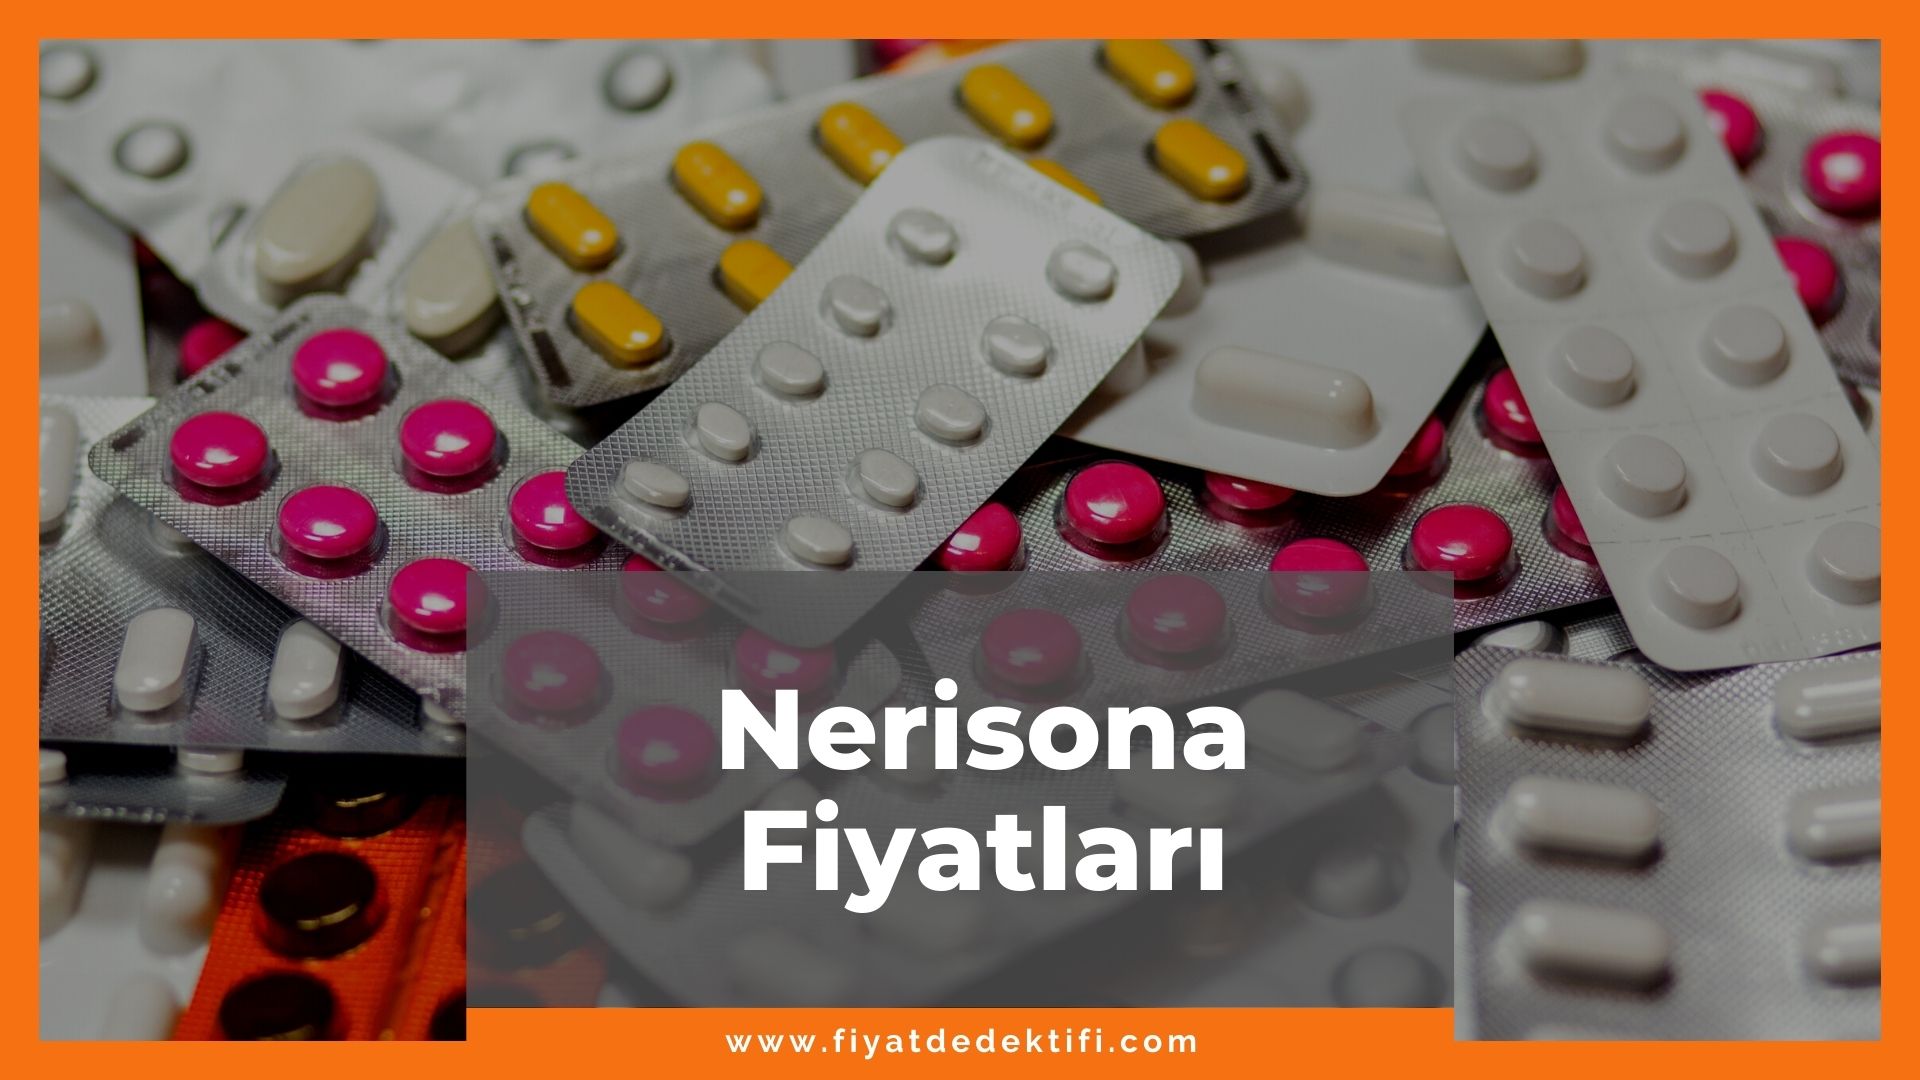 Nerisona C Fiyat, Nerisona C Fiyatı, Nerisona C Krem Fiyatı, nerisona c zamlandı mı, nerisona c zamlı fiyatı ne kadar kaç tl oldu